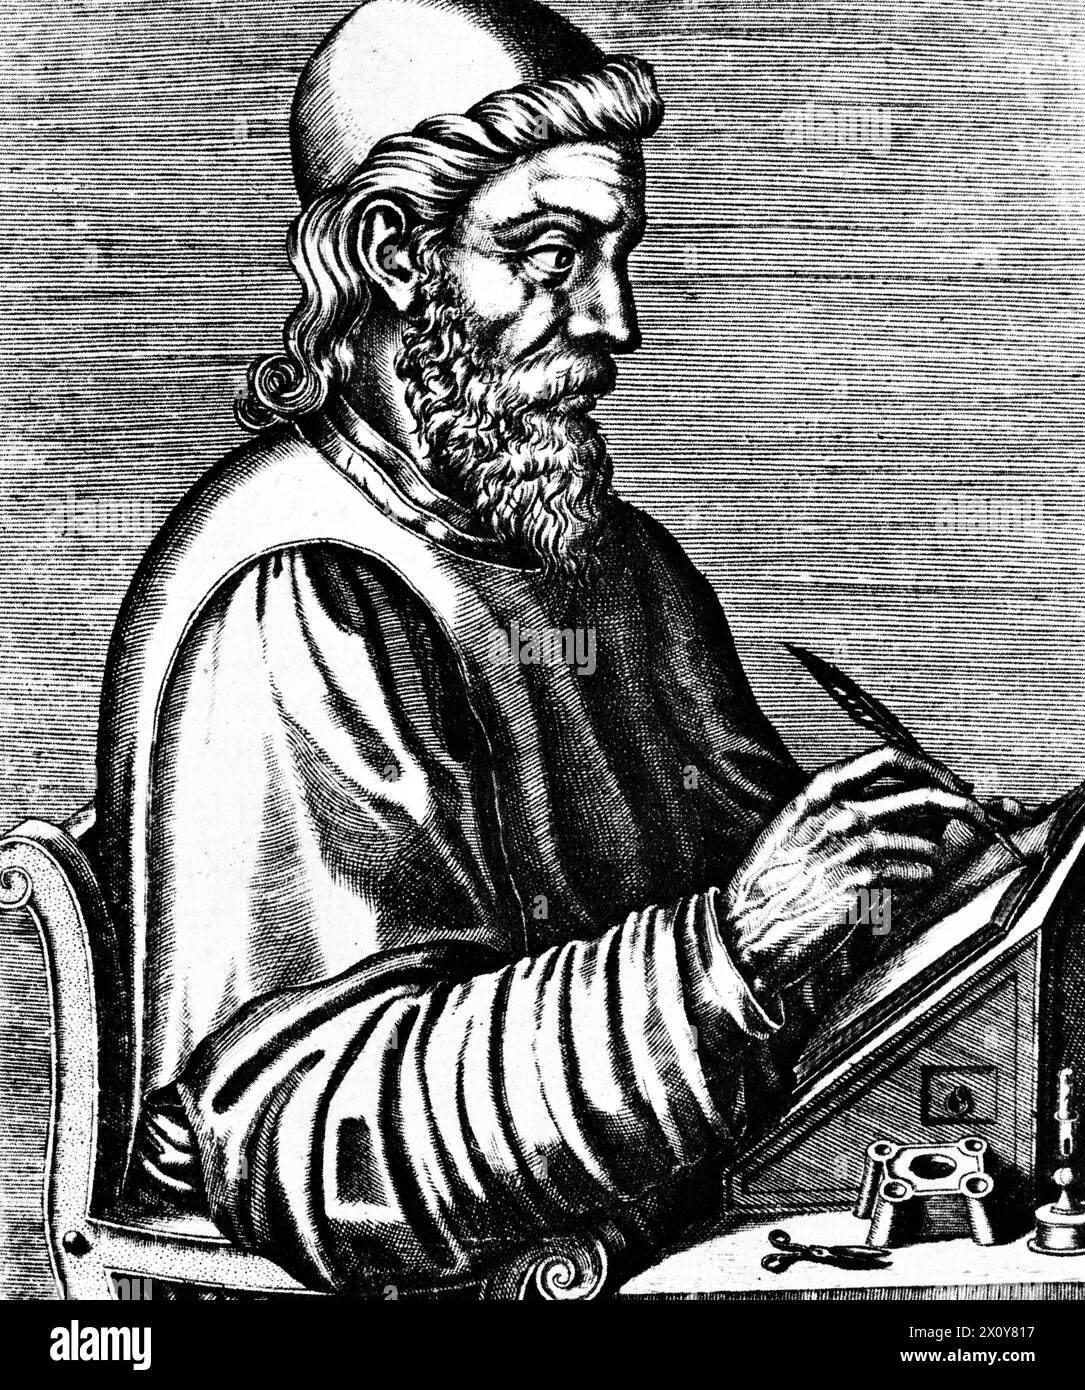 Bede (672/3-735), 1584. Bede, auch bekannt als Saint Bede, der Ehrwürdige Bede und Bede der Ehrwürdige, war ein englischer Mönch, Autor und Gelehrter. Stich aus Les Vrais Pourtraits et vies des hommes illustres 1584 von André Thevet (1516-1590). Stockfoto